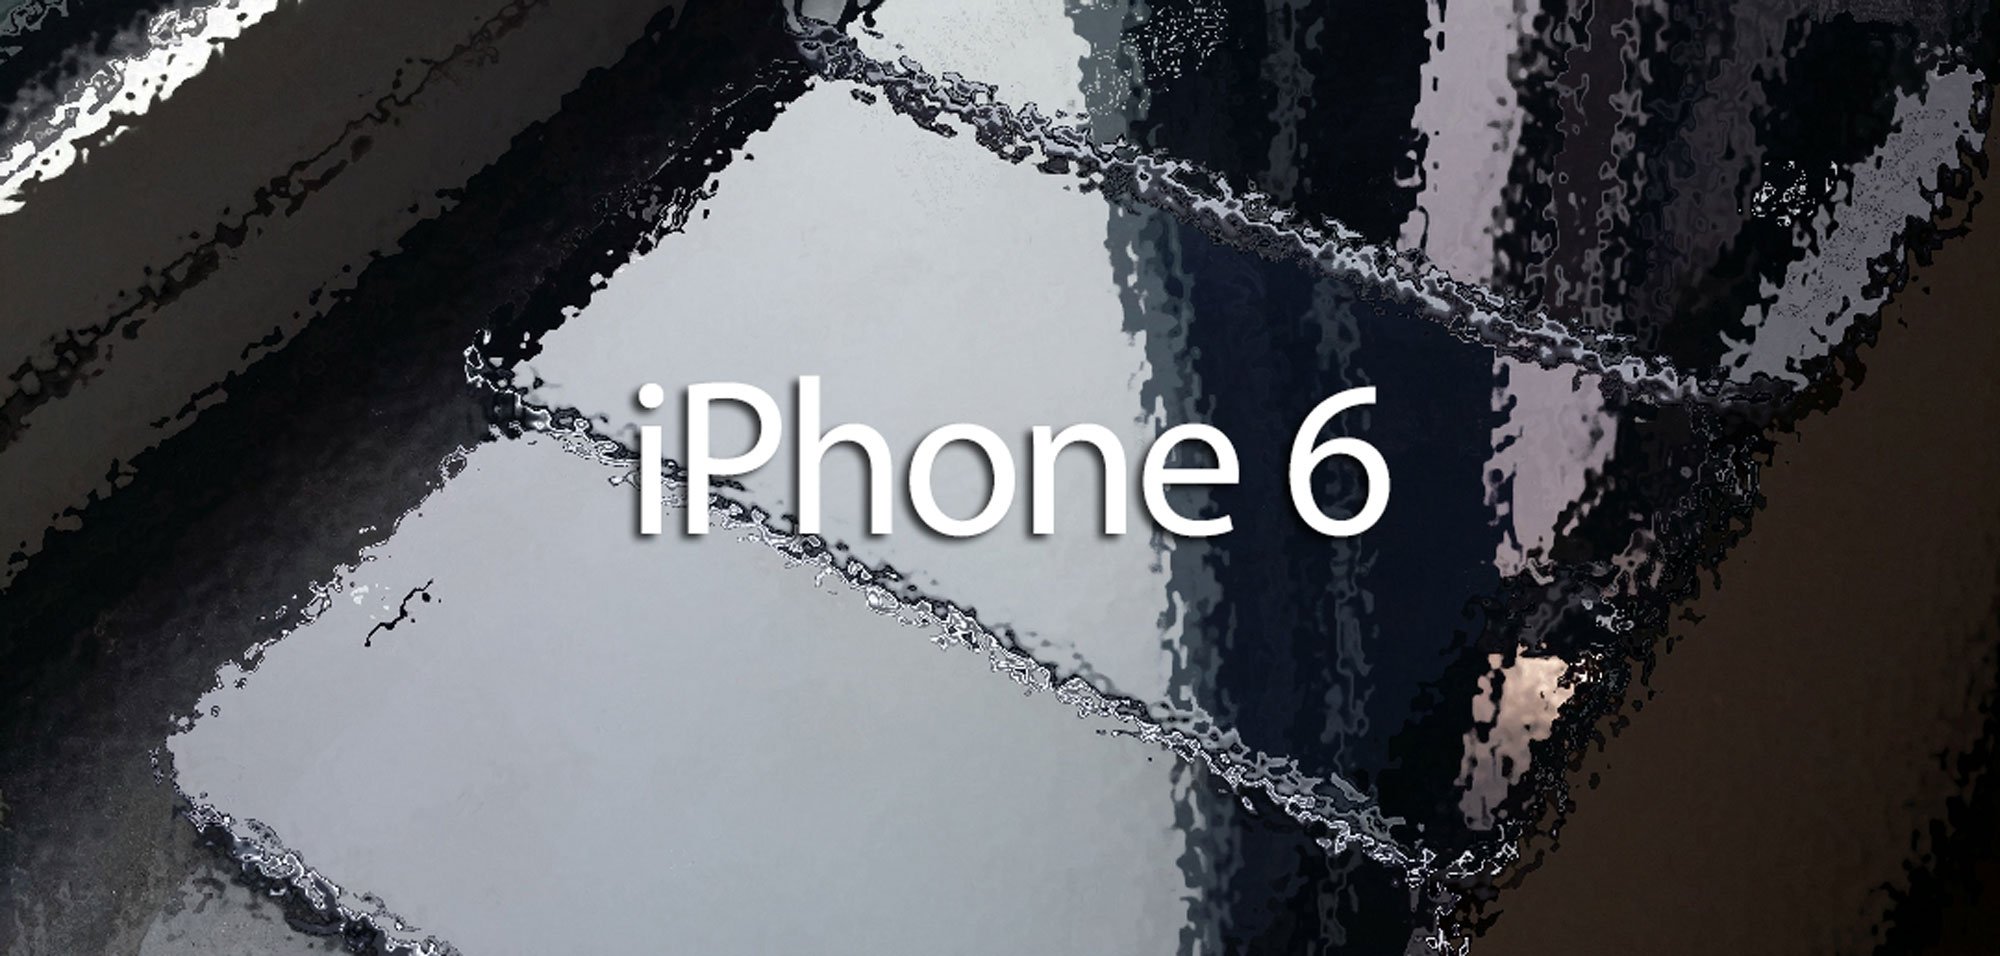 iPhone 6: Apple will alle Rekorde brechen! 6